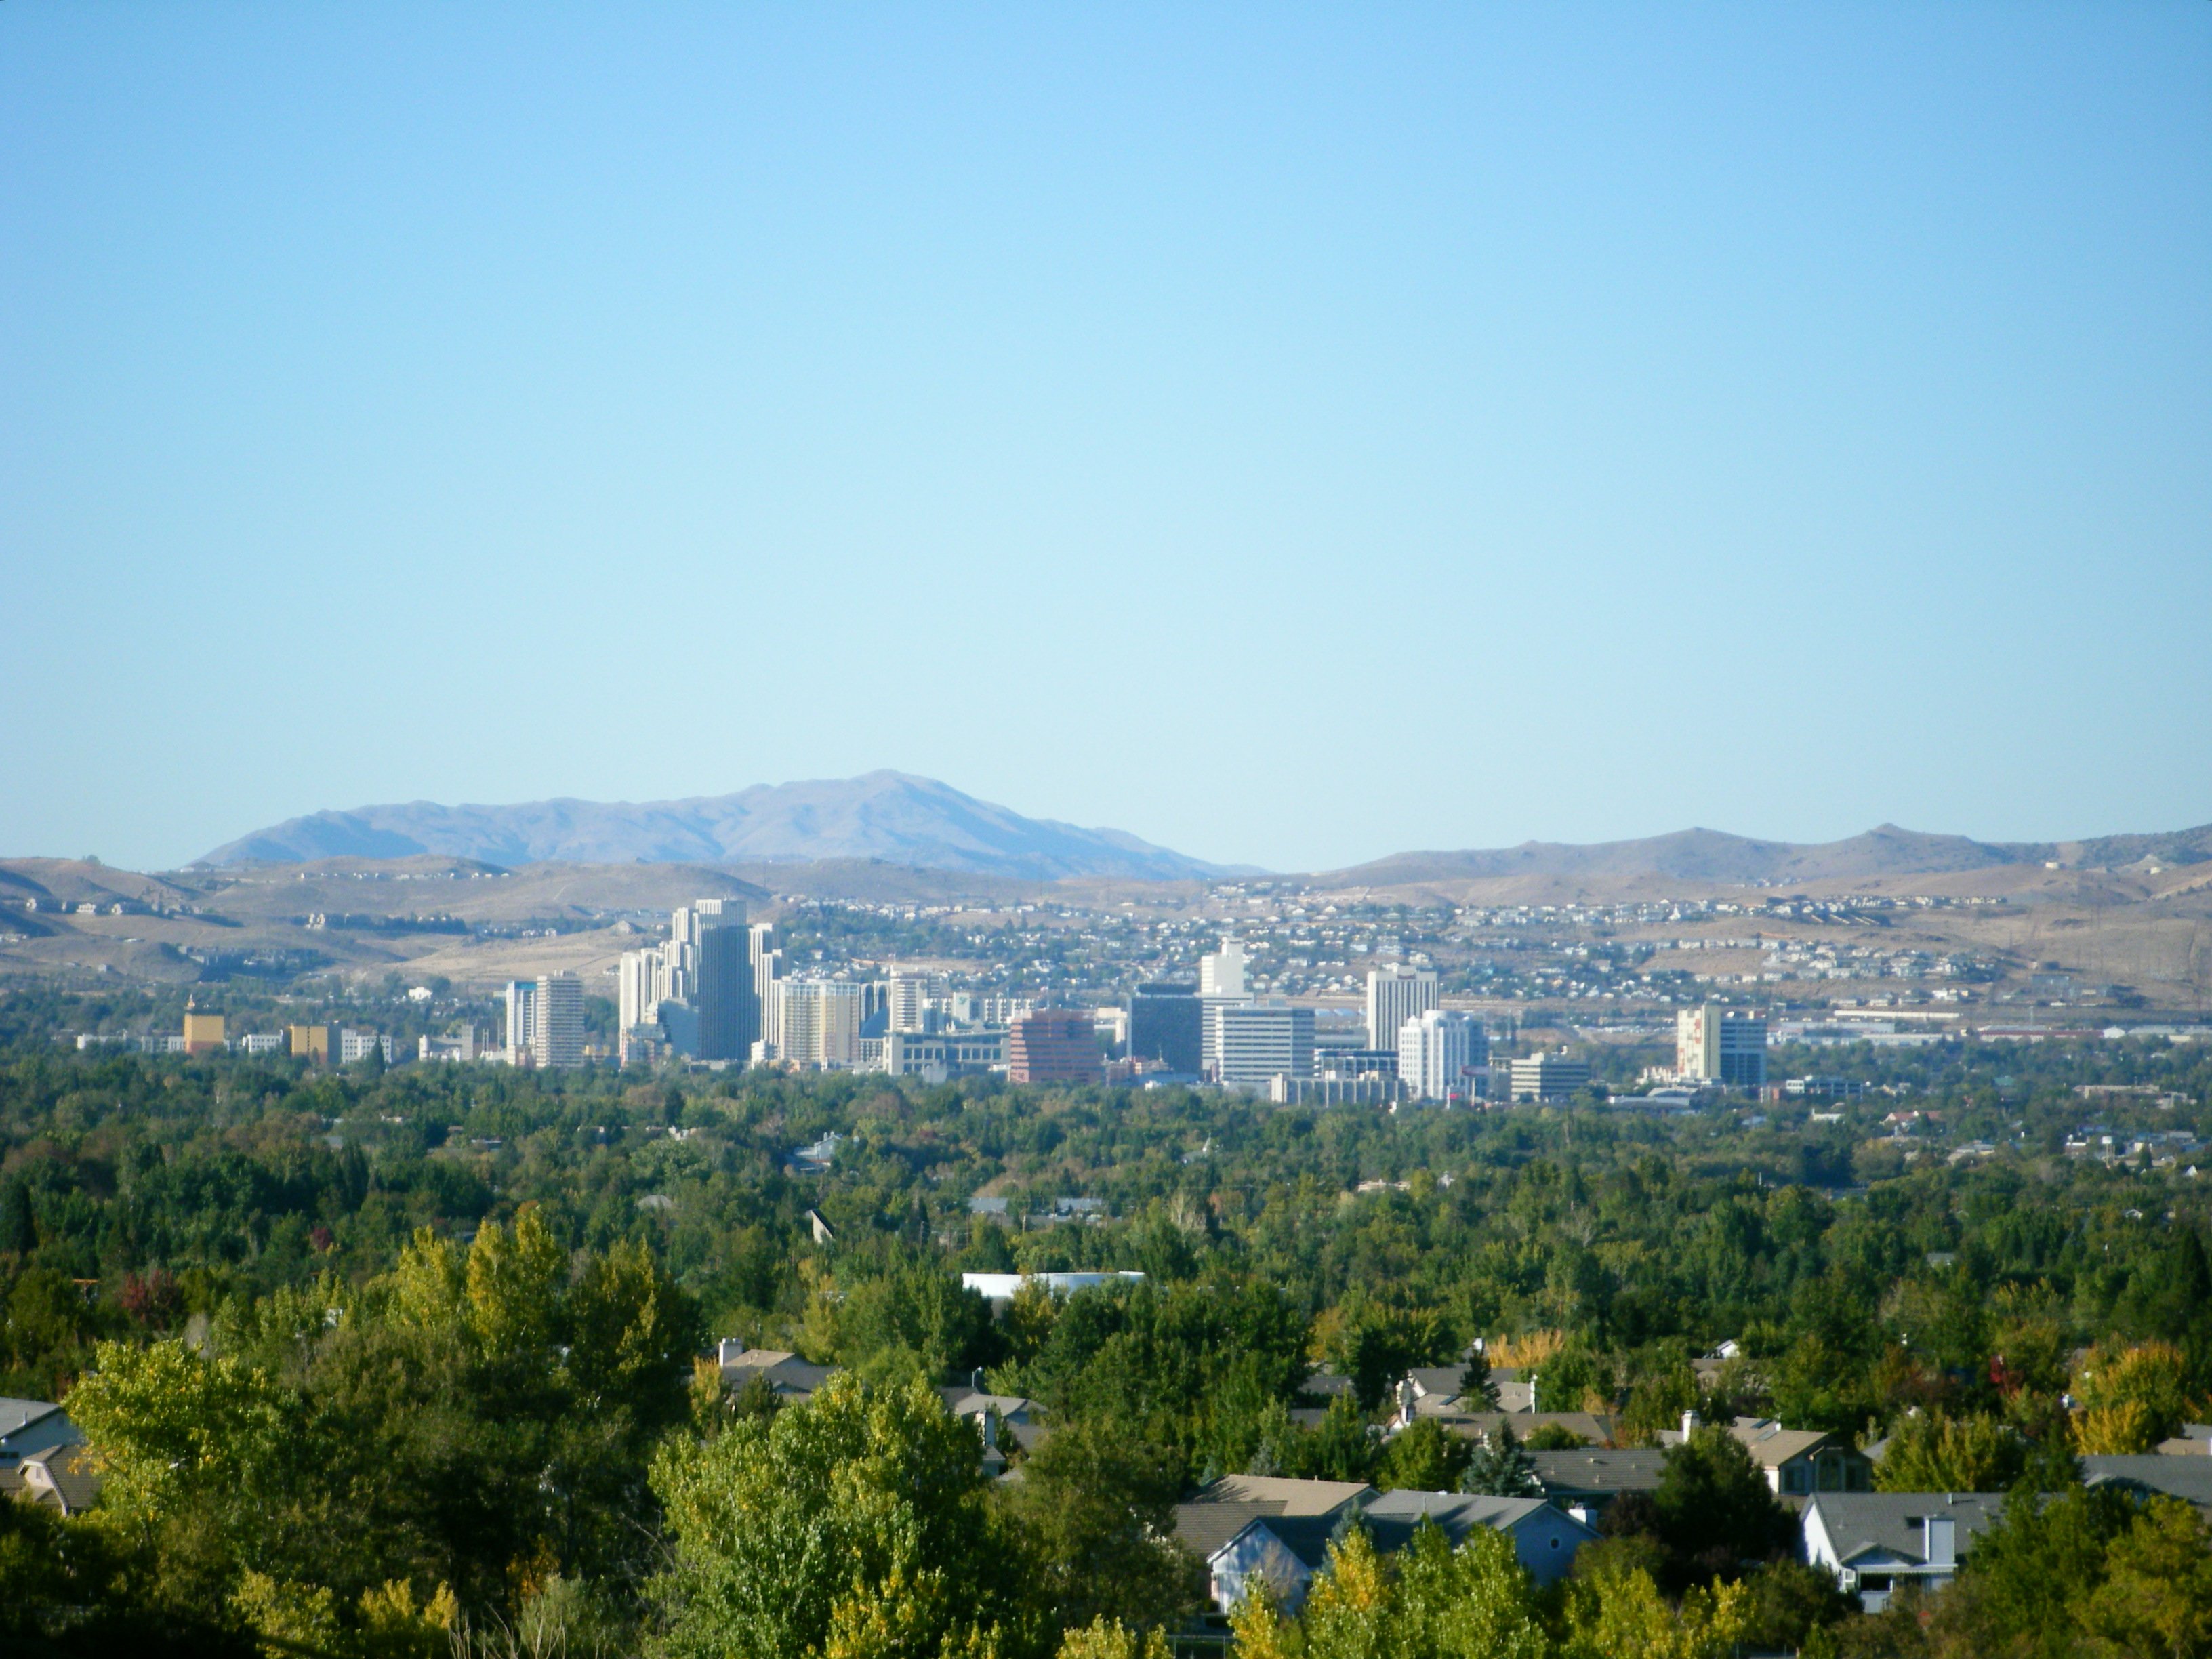 Reno NV skyline